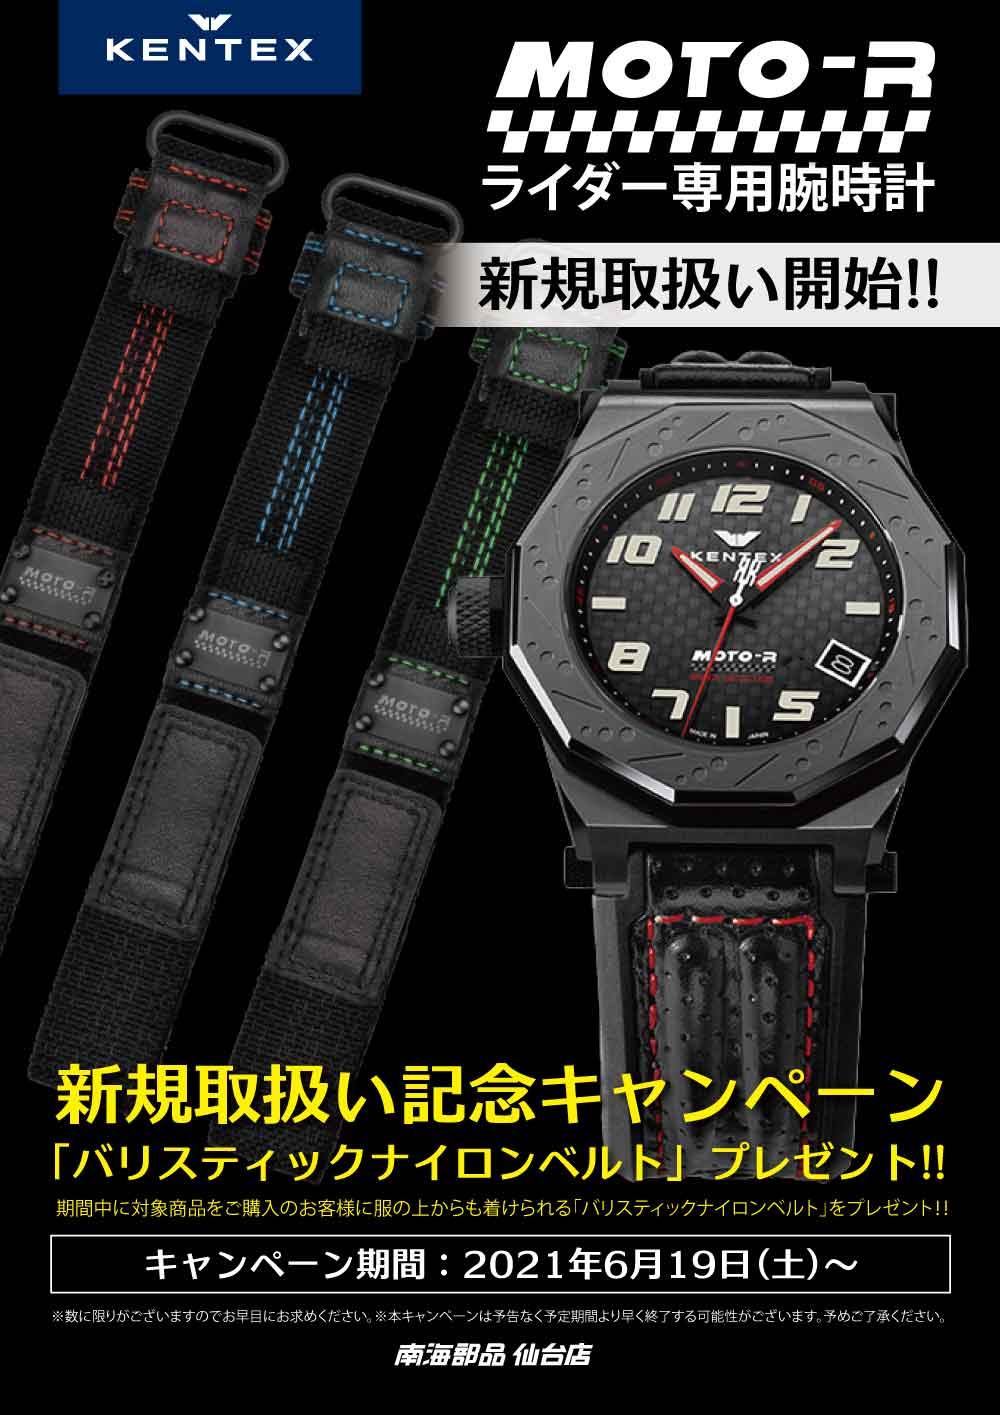 【南海部品仙台店】「ライダー専用腕時計【KENTEX MOTO-R】新規取扱い記念キャンペーン」